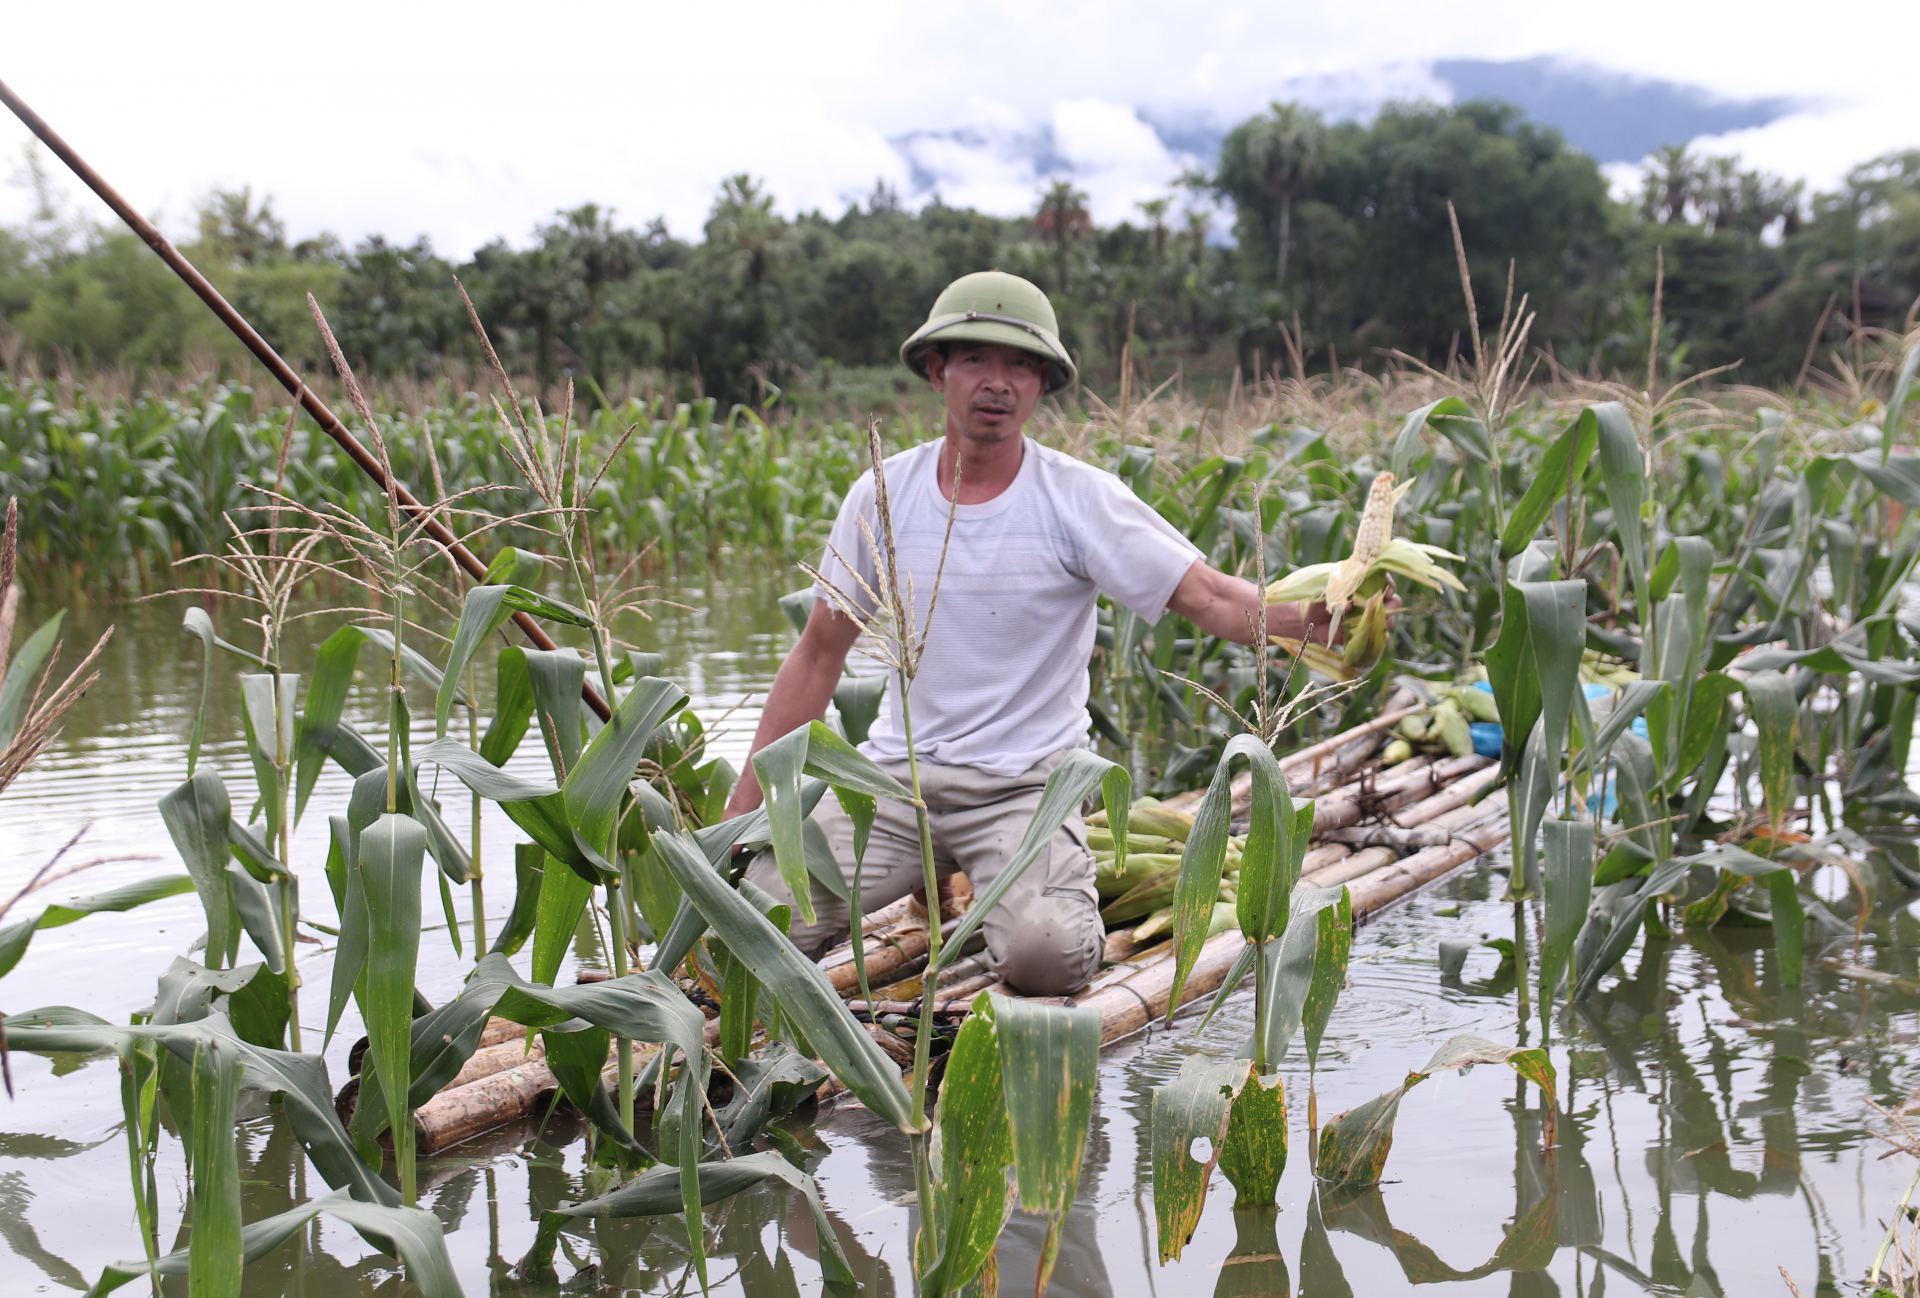 Nhiều diện tích ngô ngập sâu trong nước khiến người dân thôn Hoàng Văn Thụ (xã Quang Minh) không khỏi xót xa khi phải thu hoạch non.